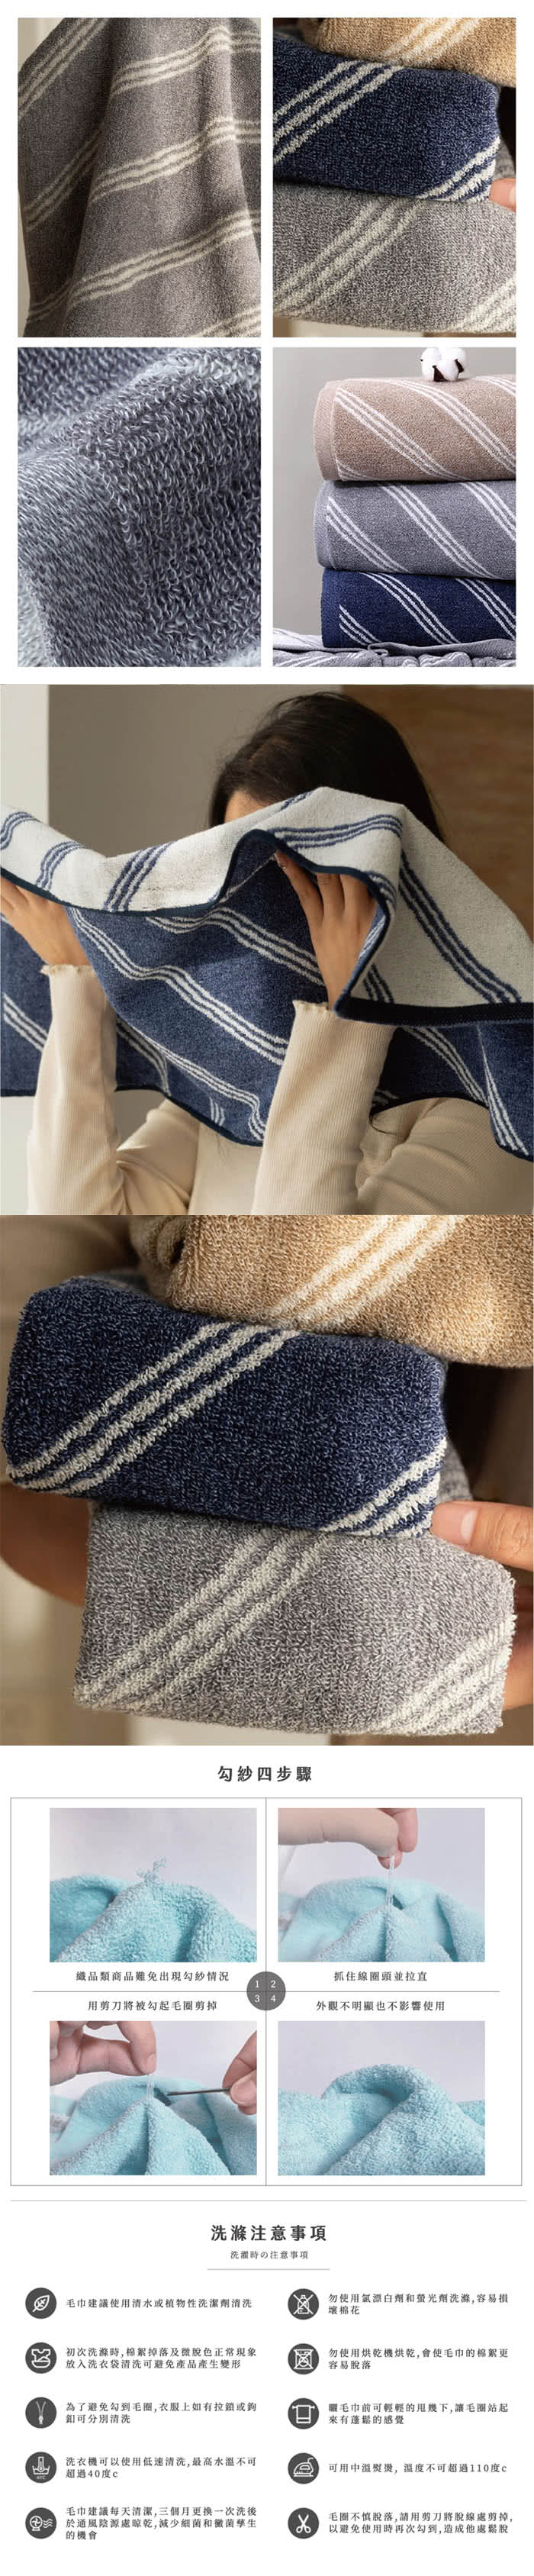 HKIL-巾專家 斜條純棉毛巾x6入(藍色/灰色/咖啡色-3